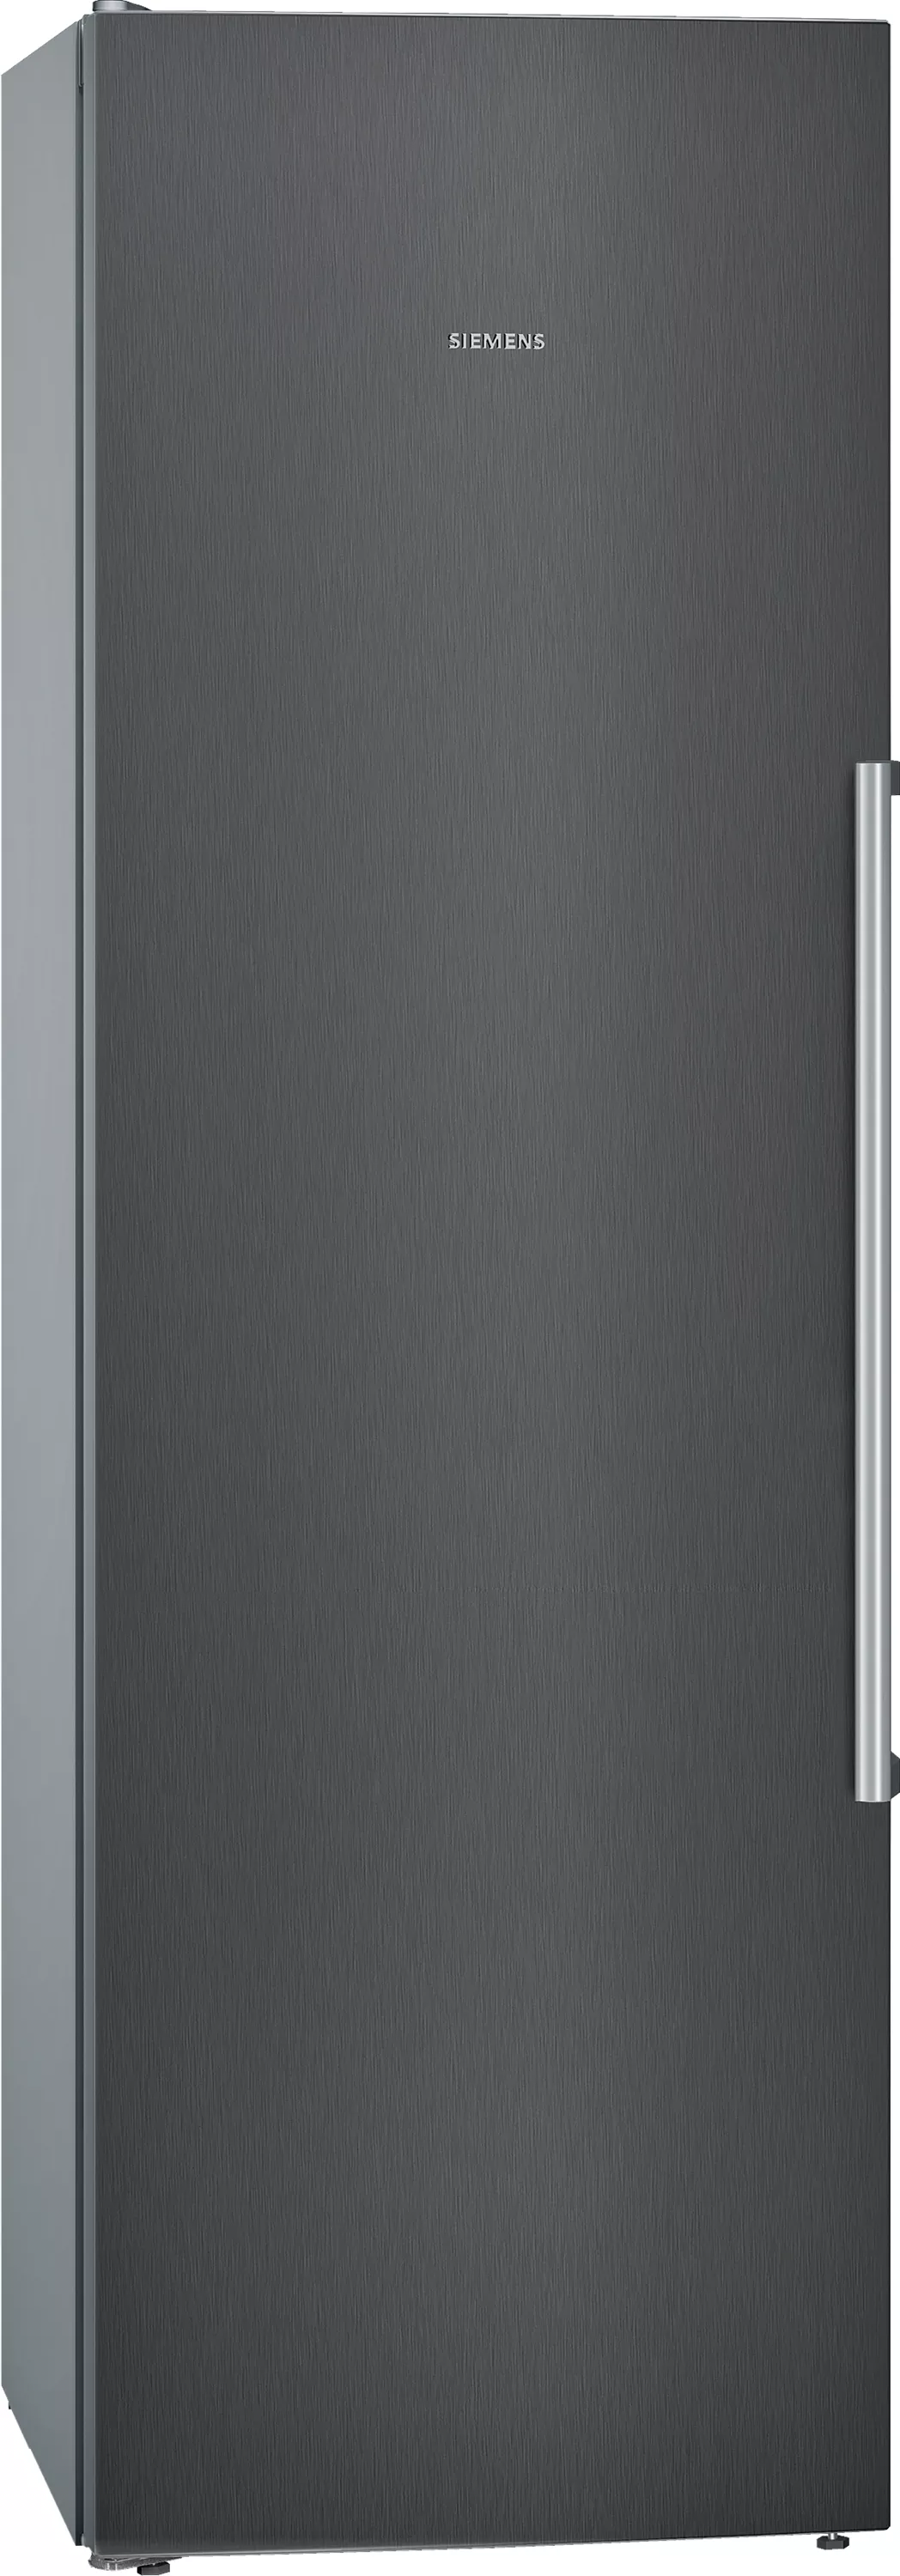 Siemens iQ700, Freistehender Kühlschrank, 186 x 60 cm, BlackSteel, KS36FPXCP